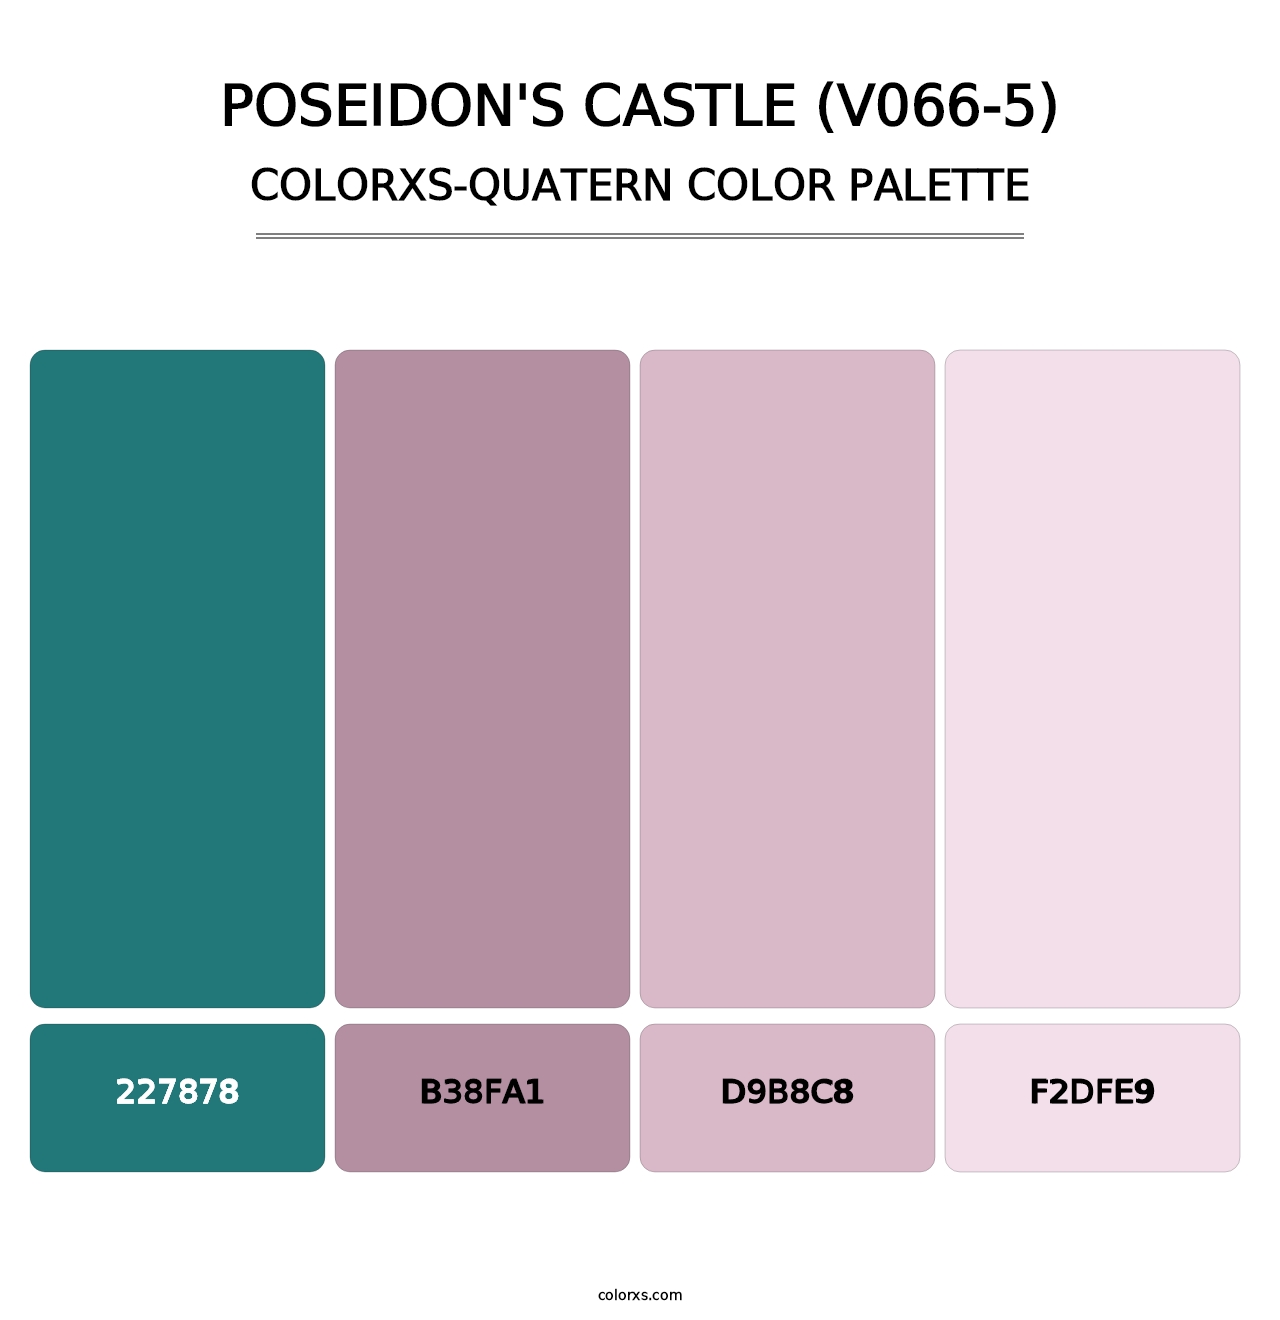 Poseidon's Castle (V066-5) - Colorxs Quatern Palette